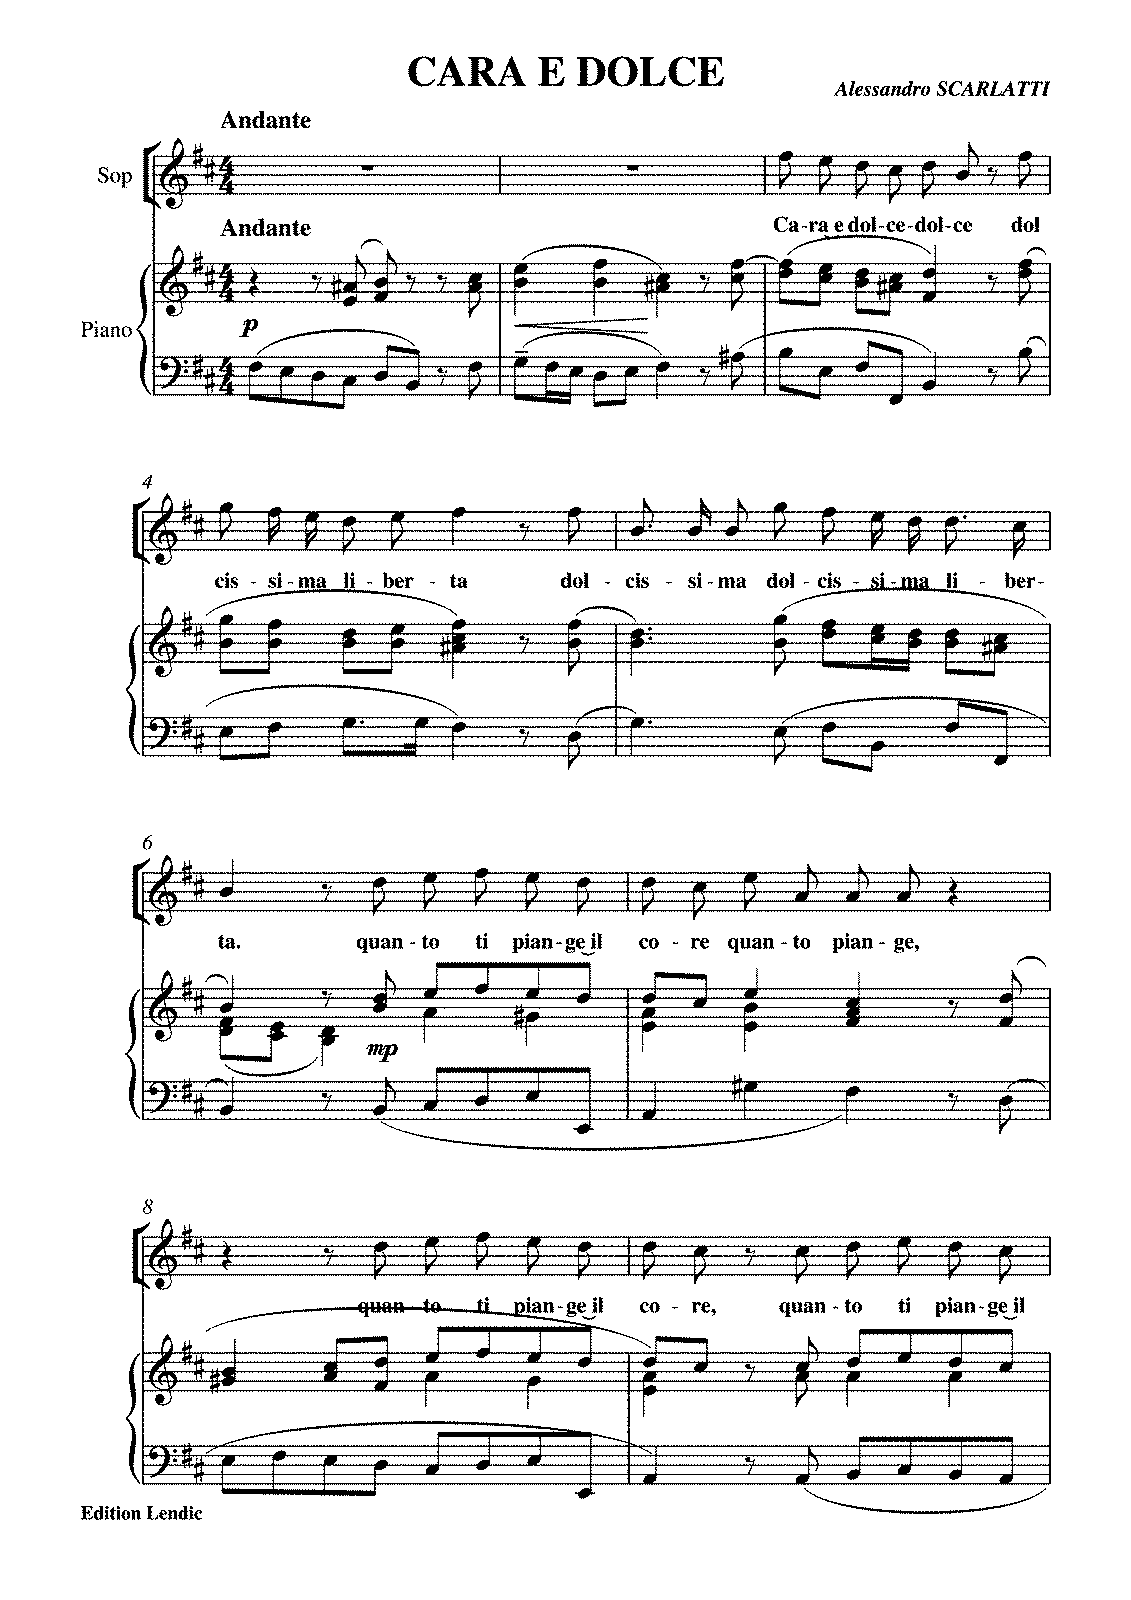 Cara e dolce (Scarlatti, Alessandro) - IMSLP